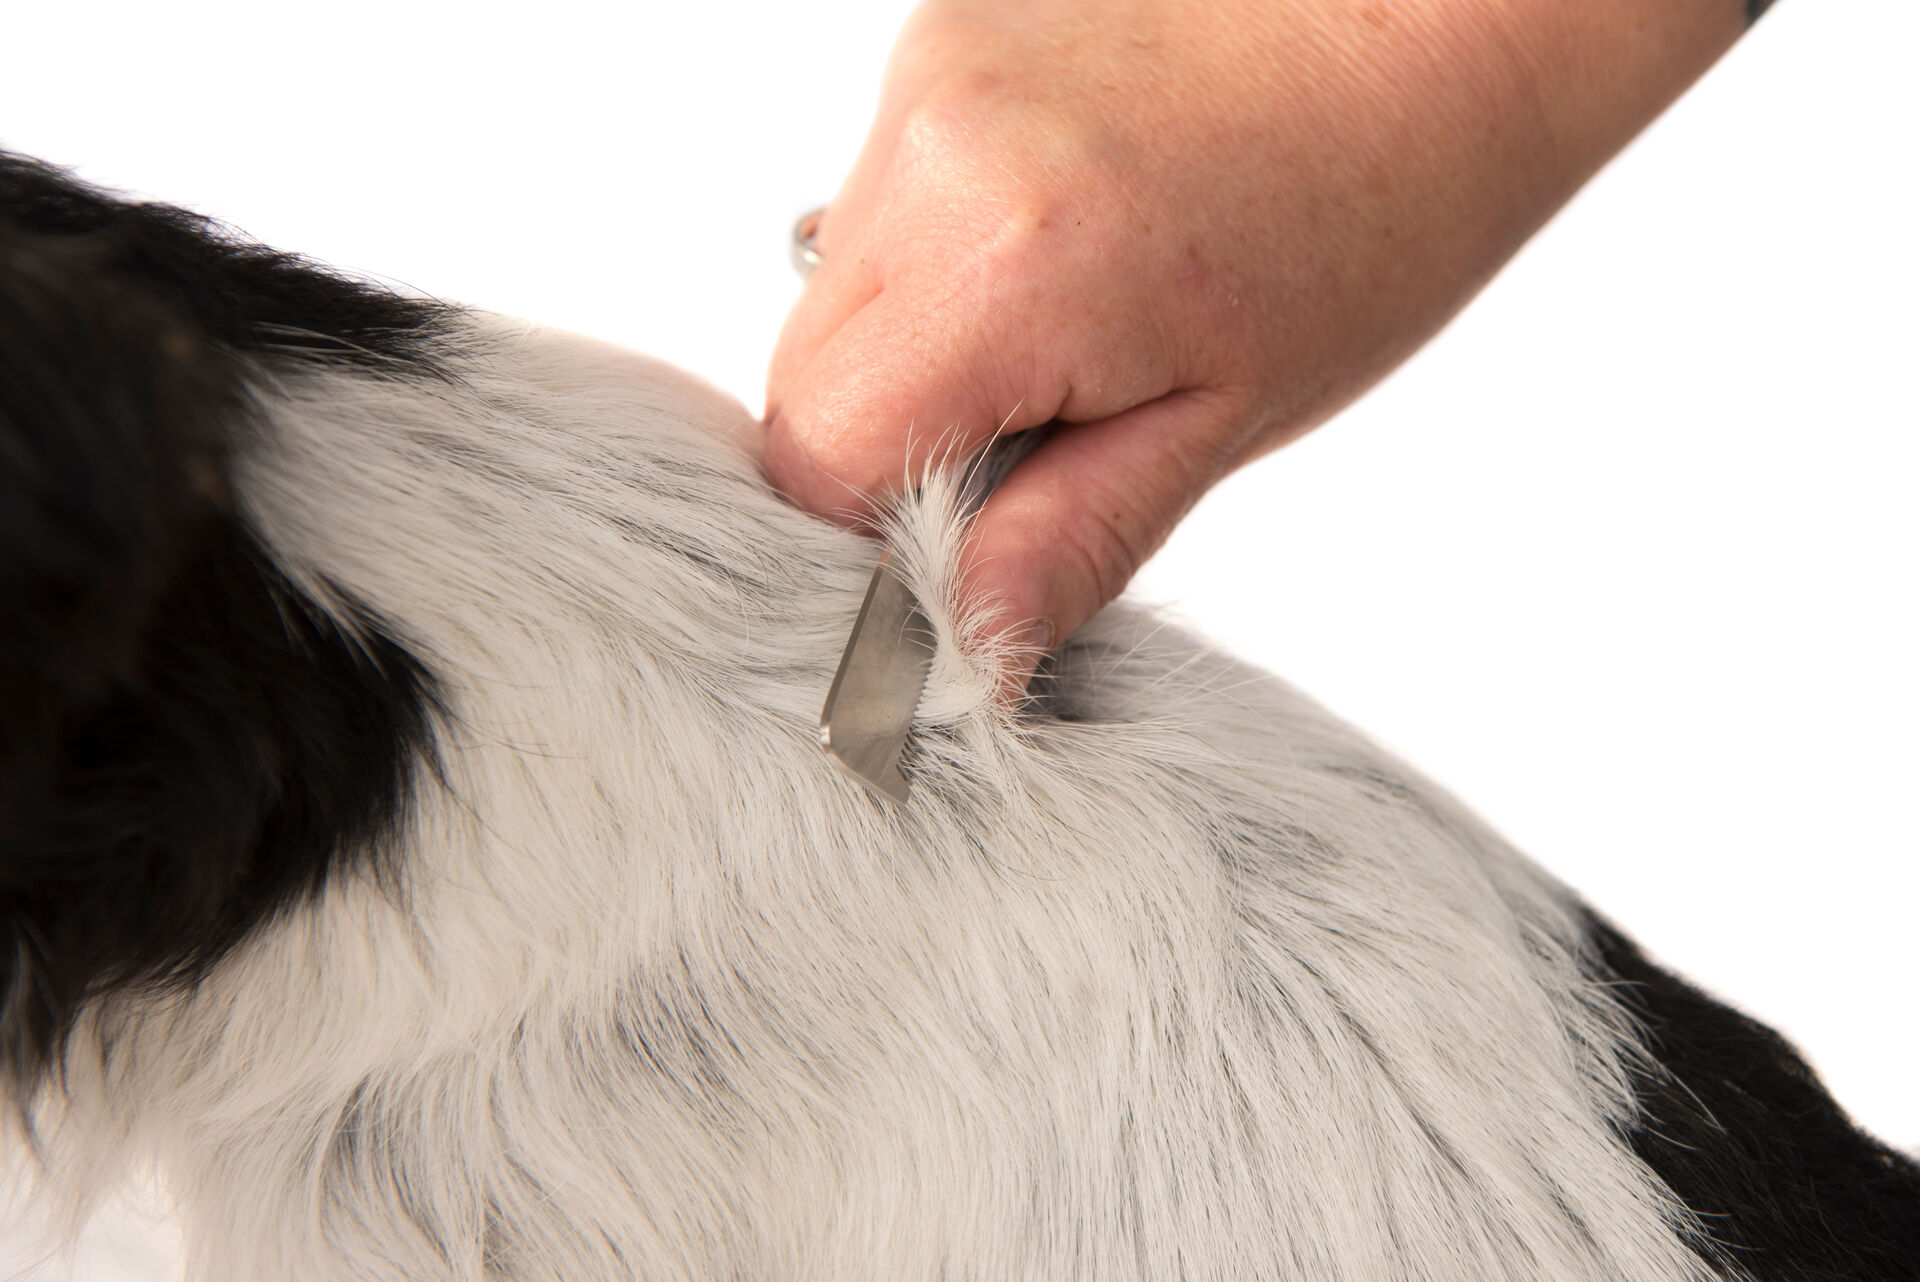  Eine Nahaufnahme bei der das Rückenfell eines Hundes getrimmt wird.